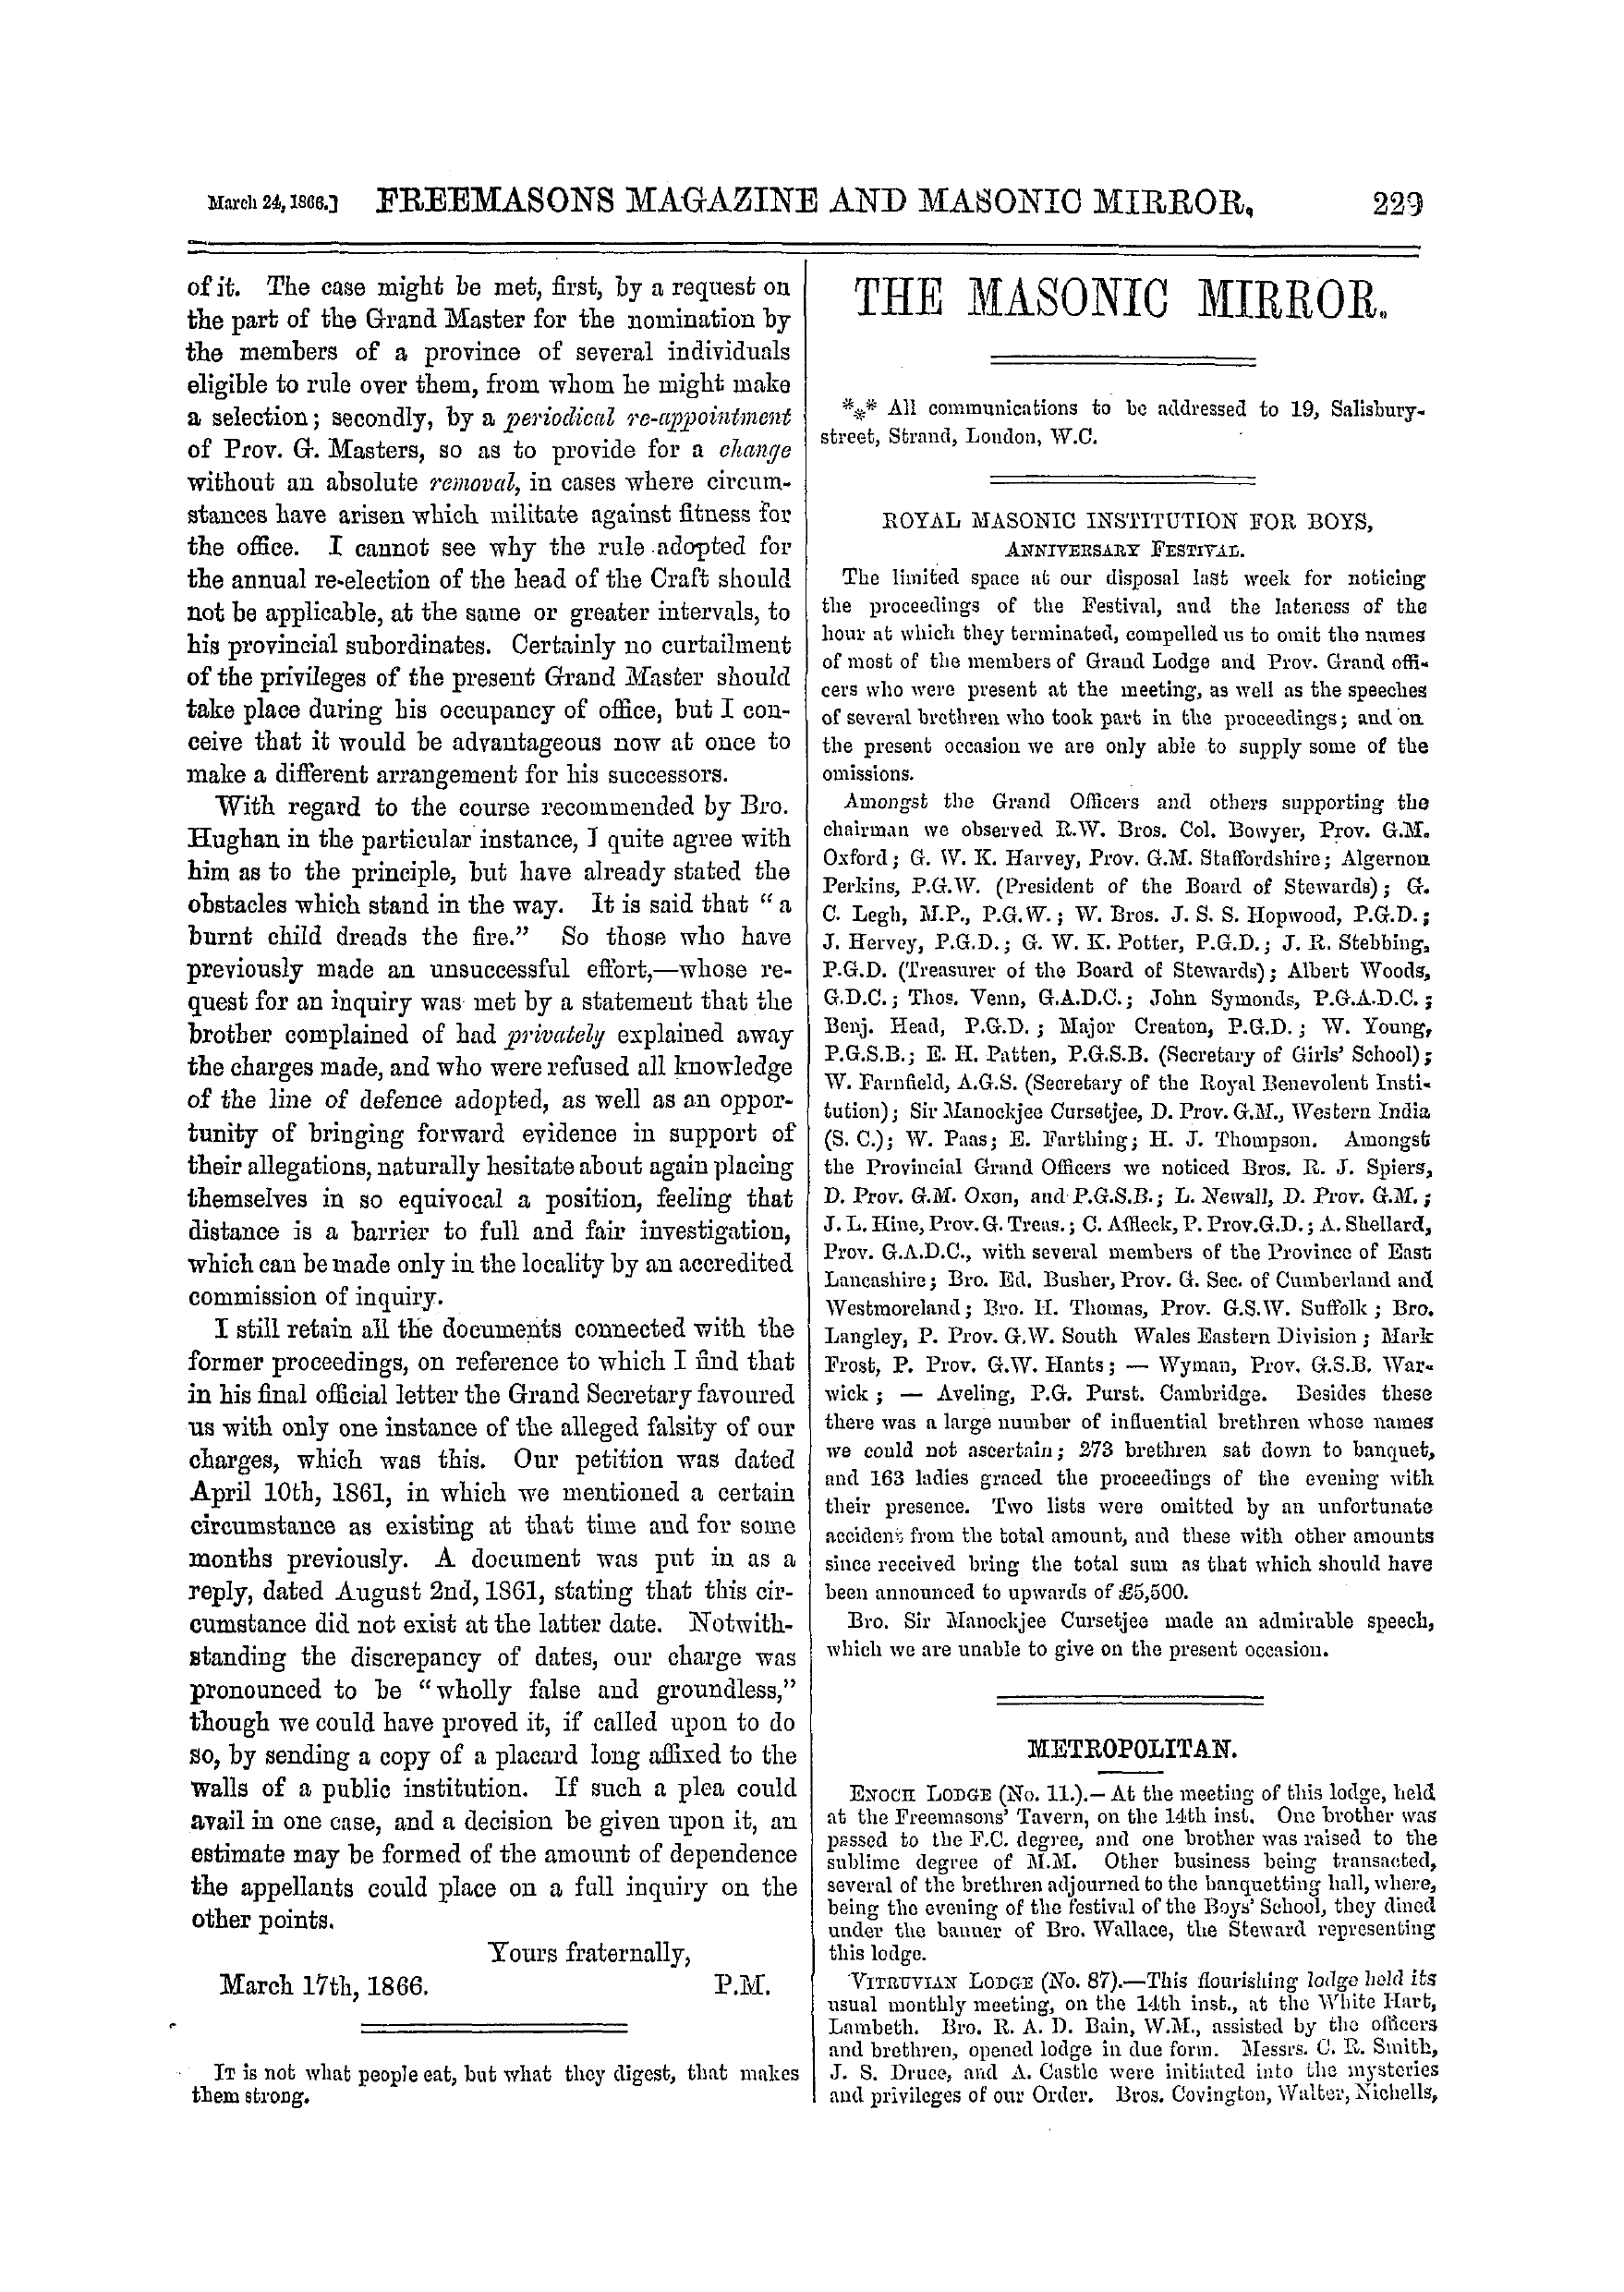 The Freemasons' Monthly Magazine: 1866-03-24: 9